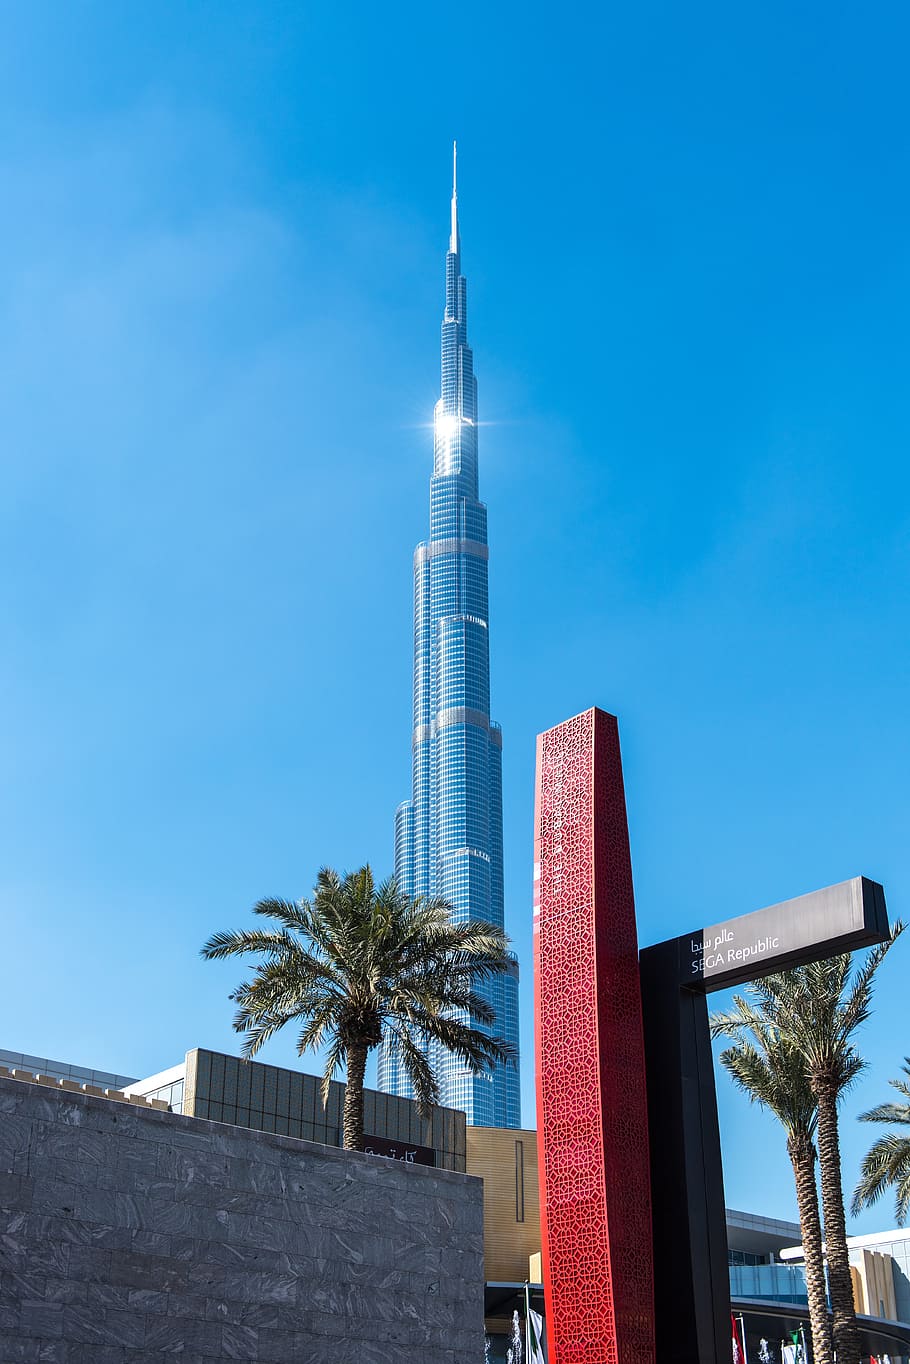 버즈 칼리파, 두바이, 현대, 건축, 마천루, 세계에서 가장 높은 건물, u a e, 건축 된 구조, 건물 외관, 건축물